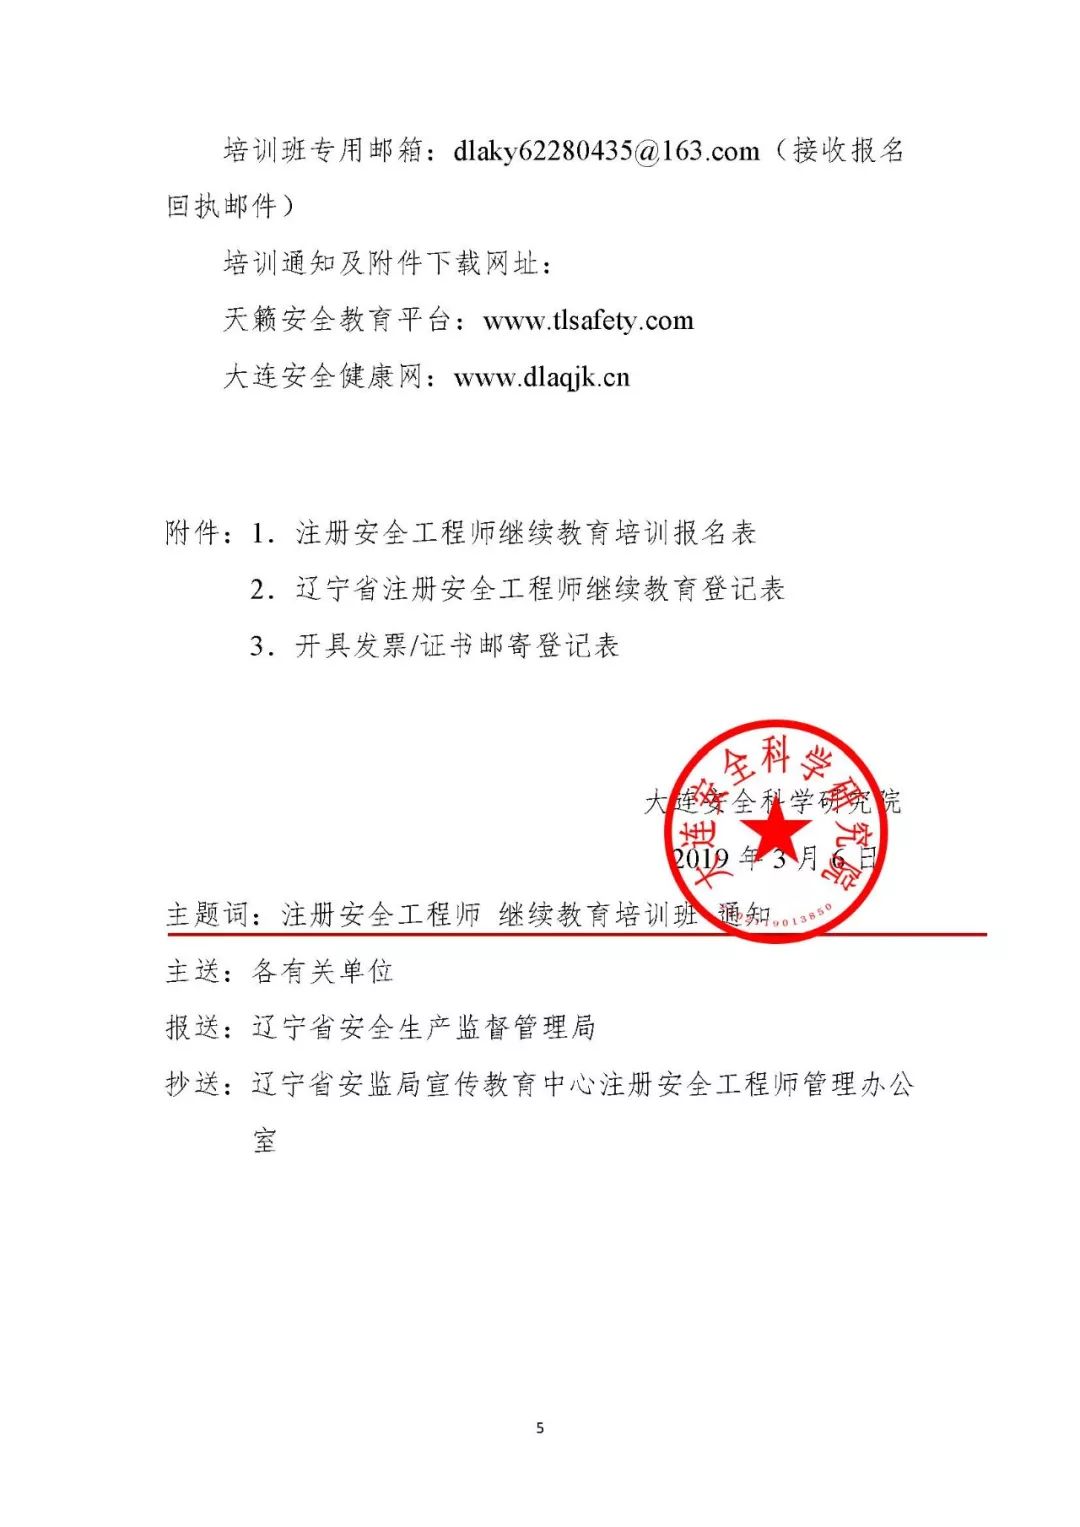 关于举办2019年度第一期辽宁省注册安全工程师继续教育培训班的通知